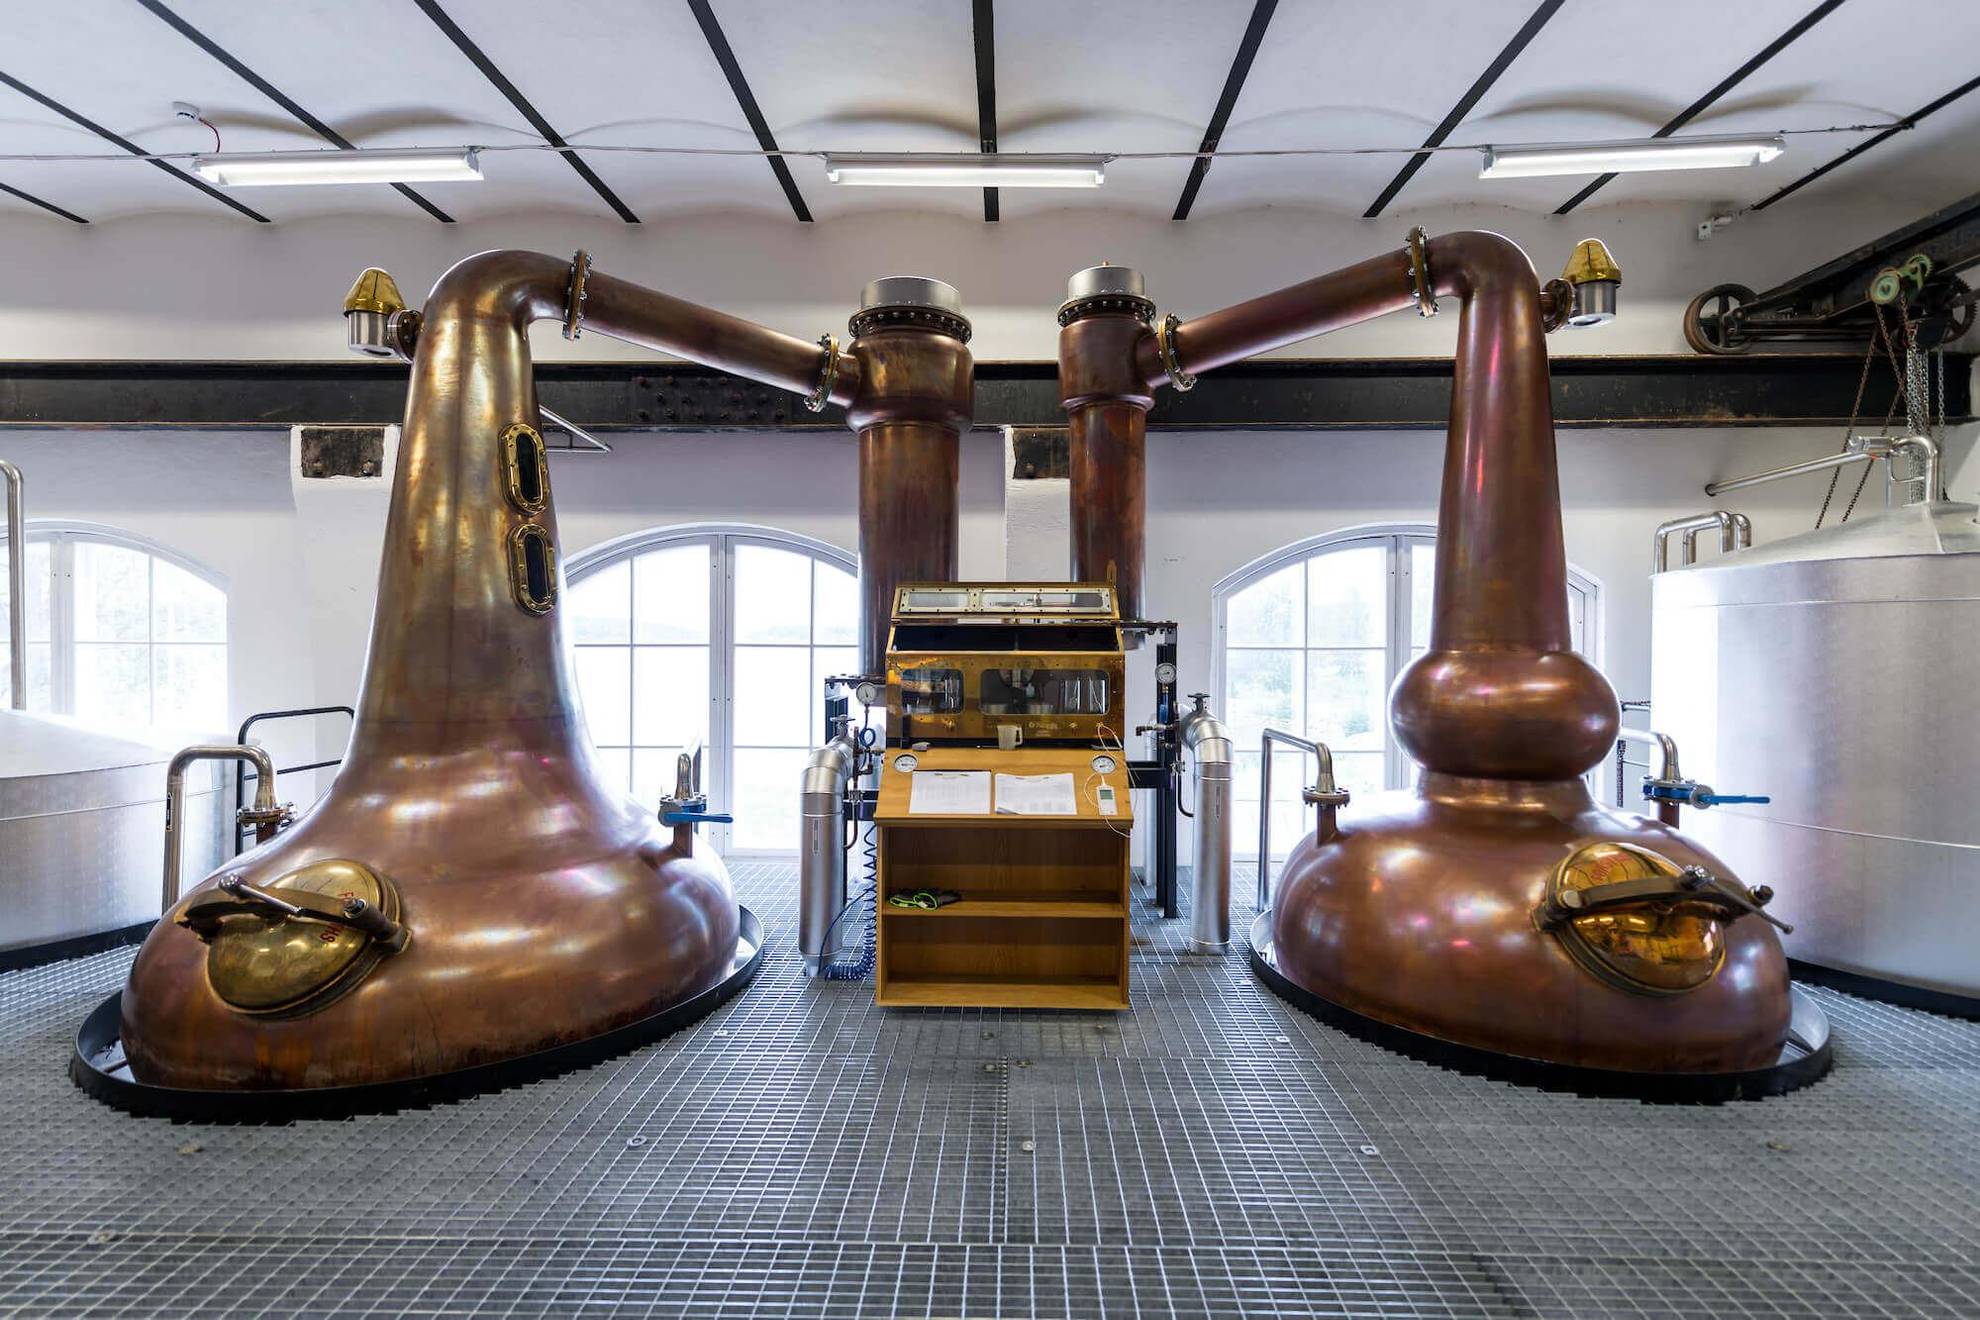 High Coast Whisky distillery